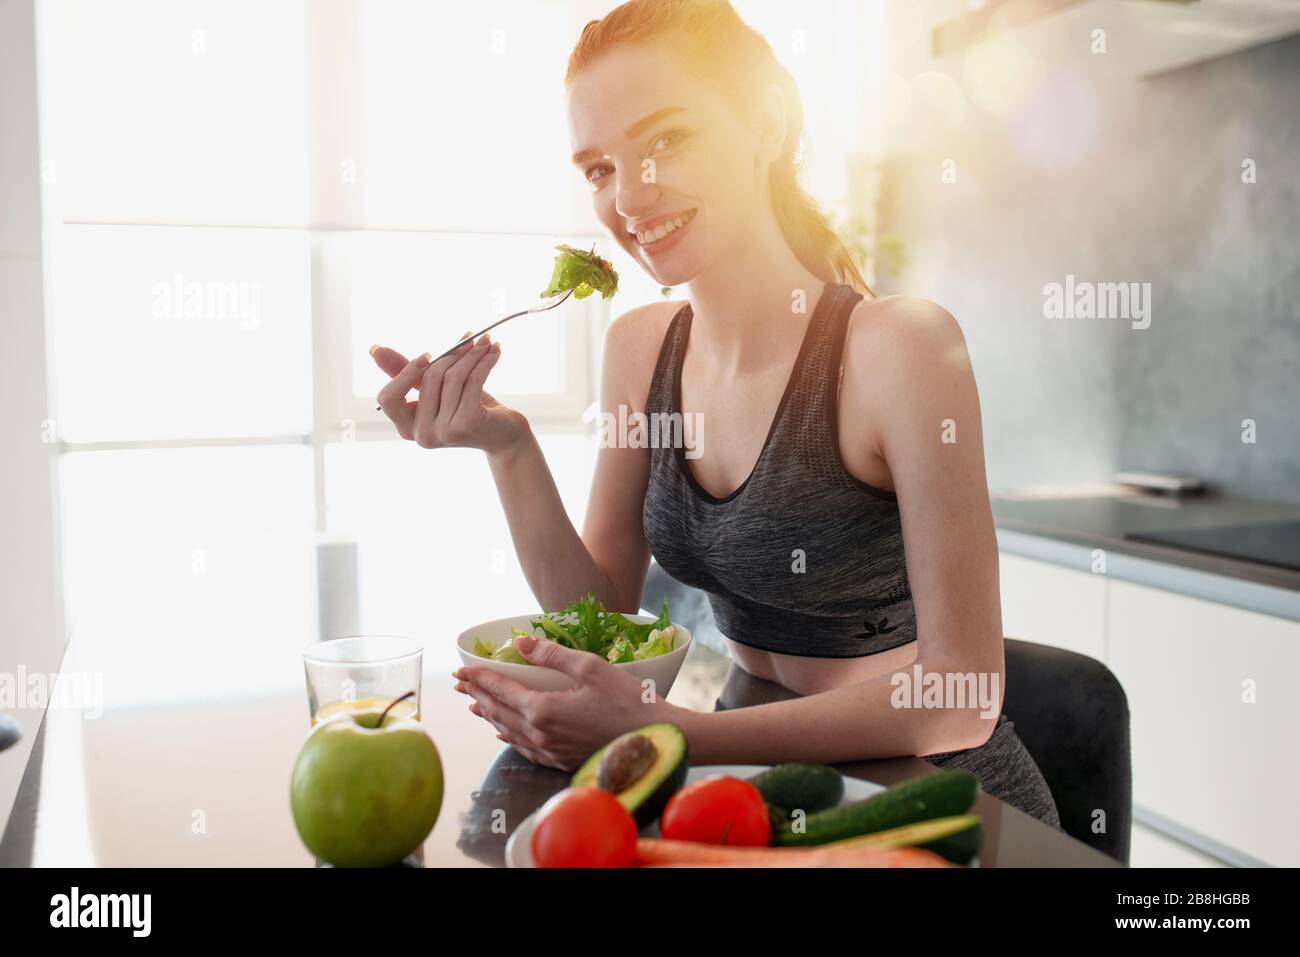 La ragazza atletica con i vestiti della palestra mangia l'insalata nella cucina Foto Stock